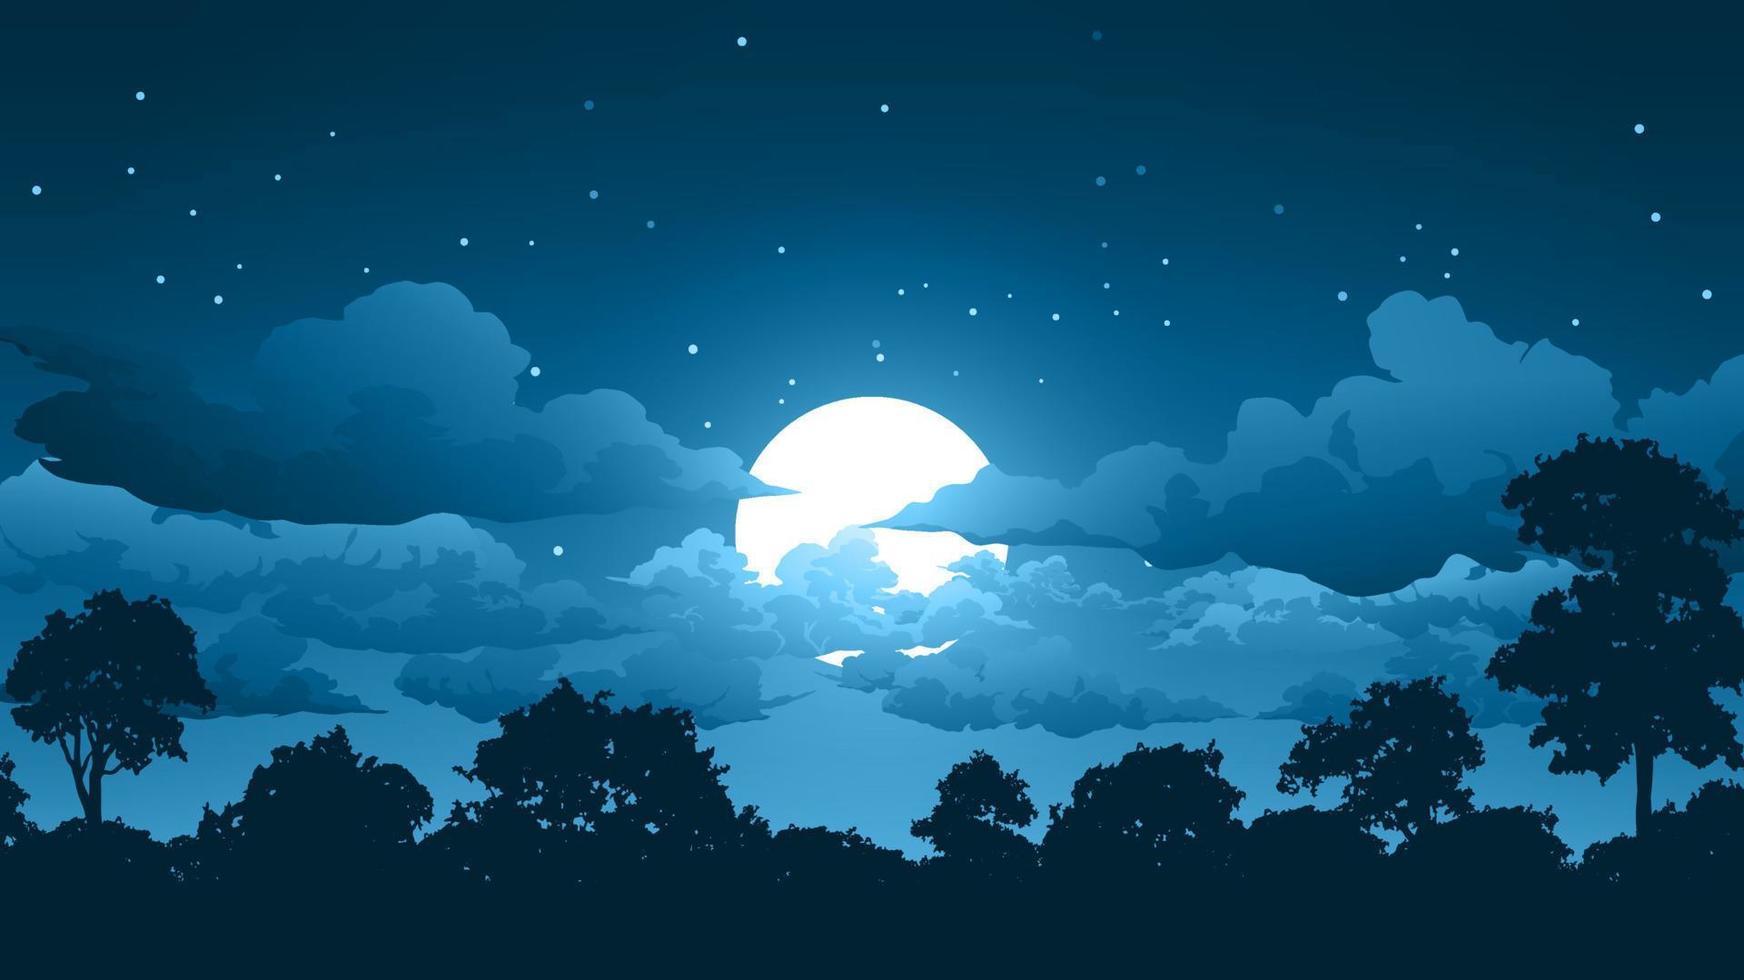 skog natt med fullmåne och stjärnor landskap illustration vektor